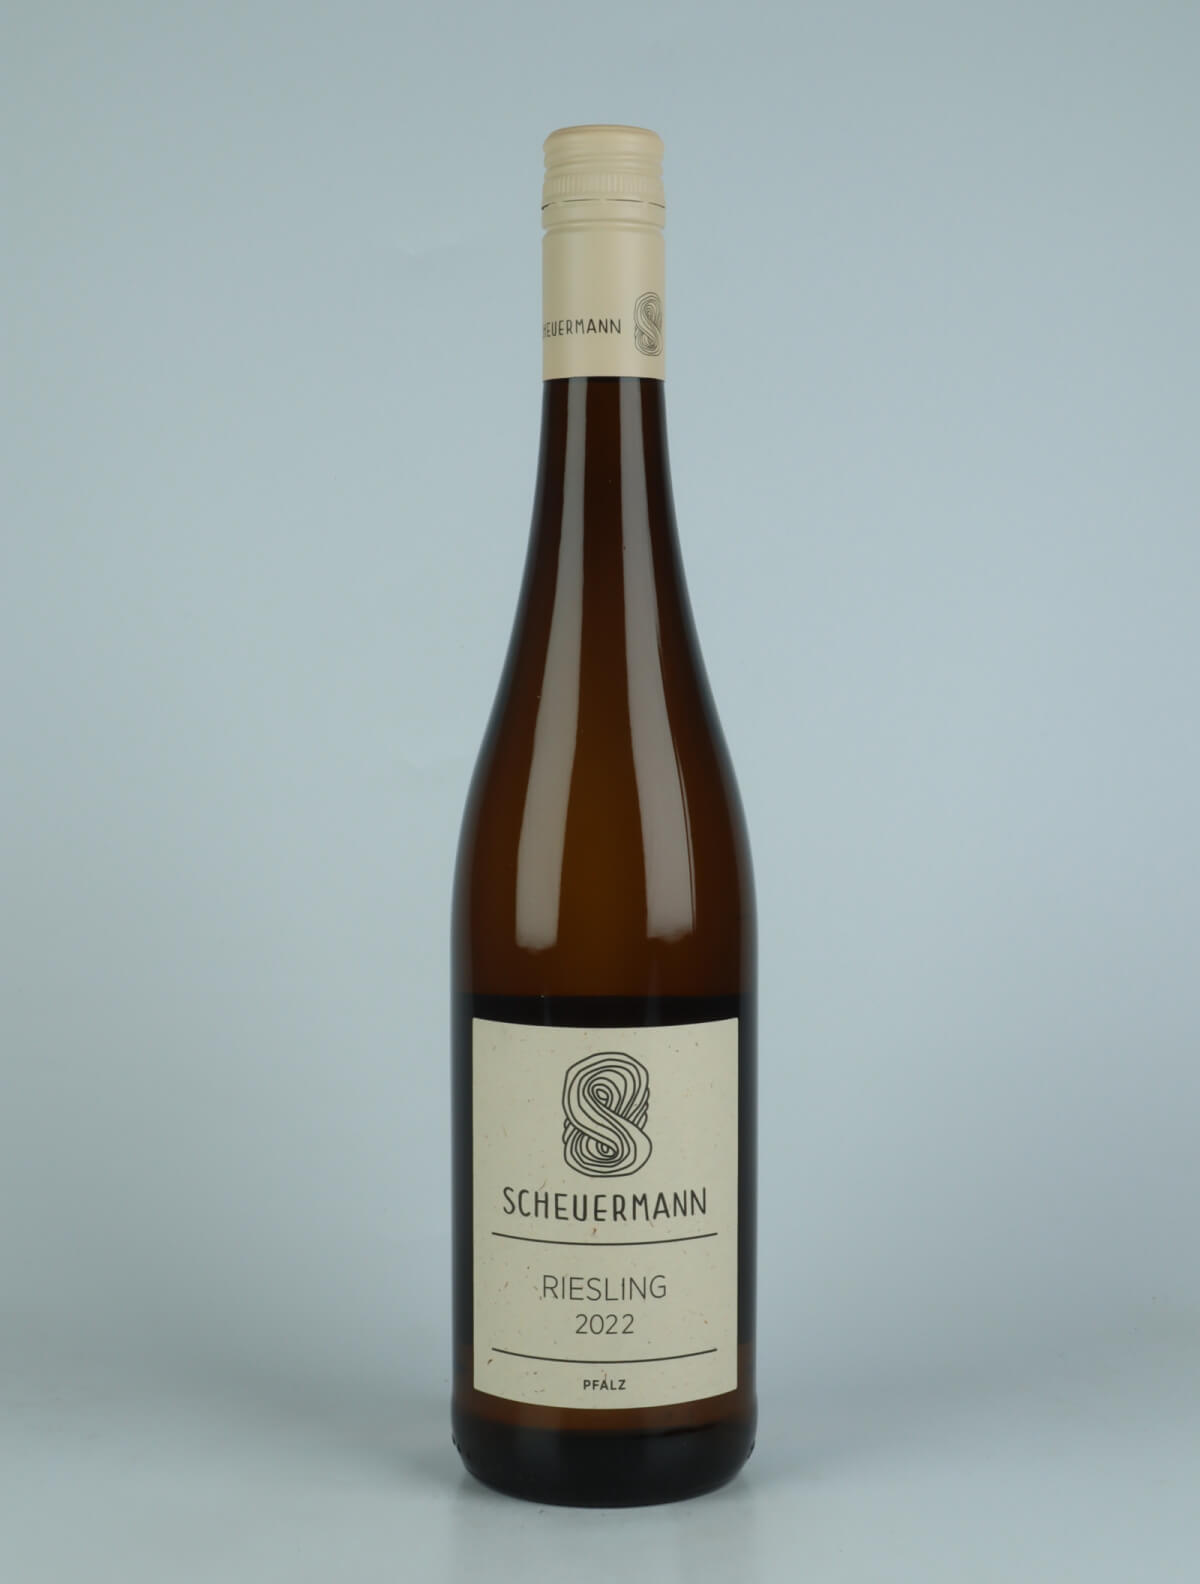 A bottle 2022 Riesling Trocken White wine from Weingut Scheuermann, Pfalz in Germany